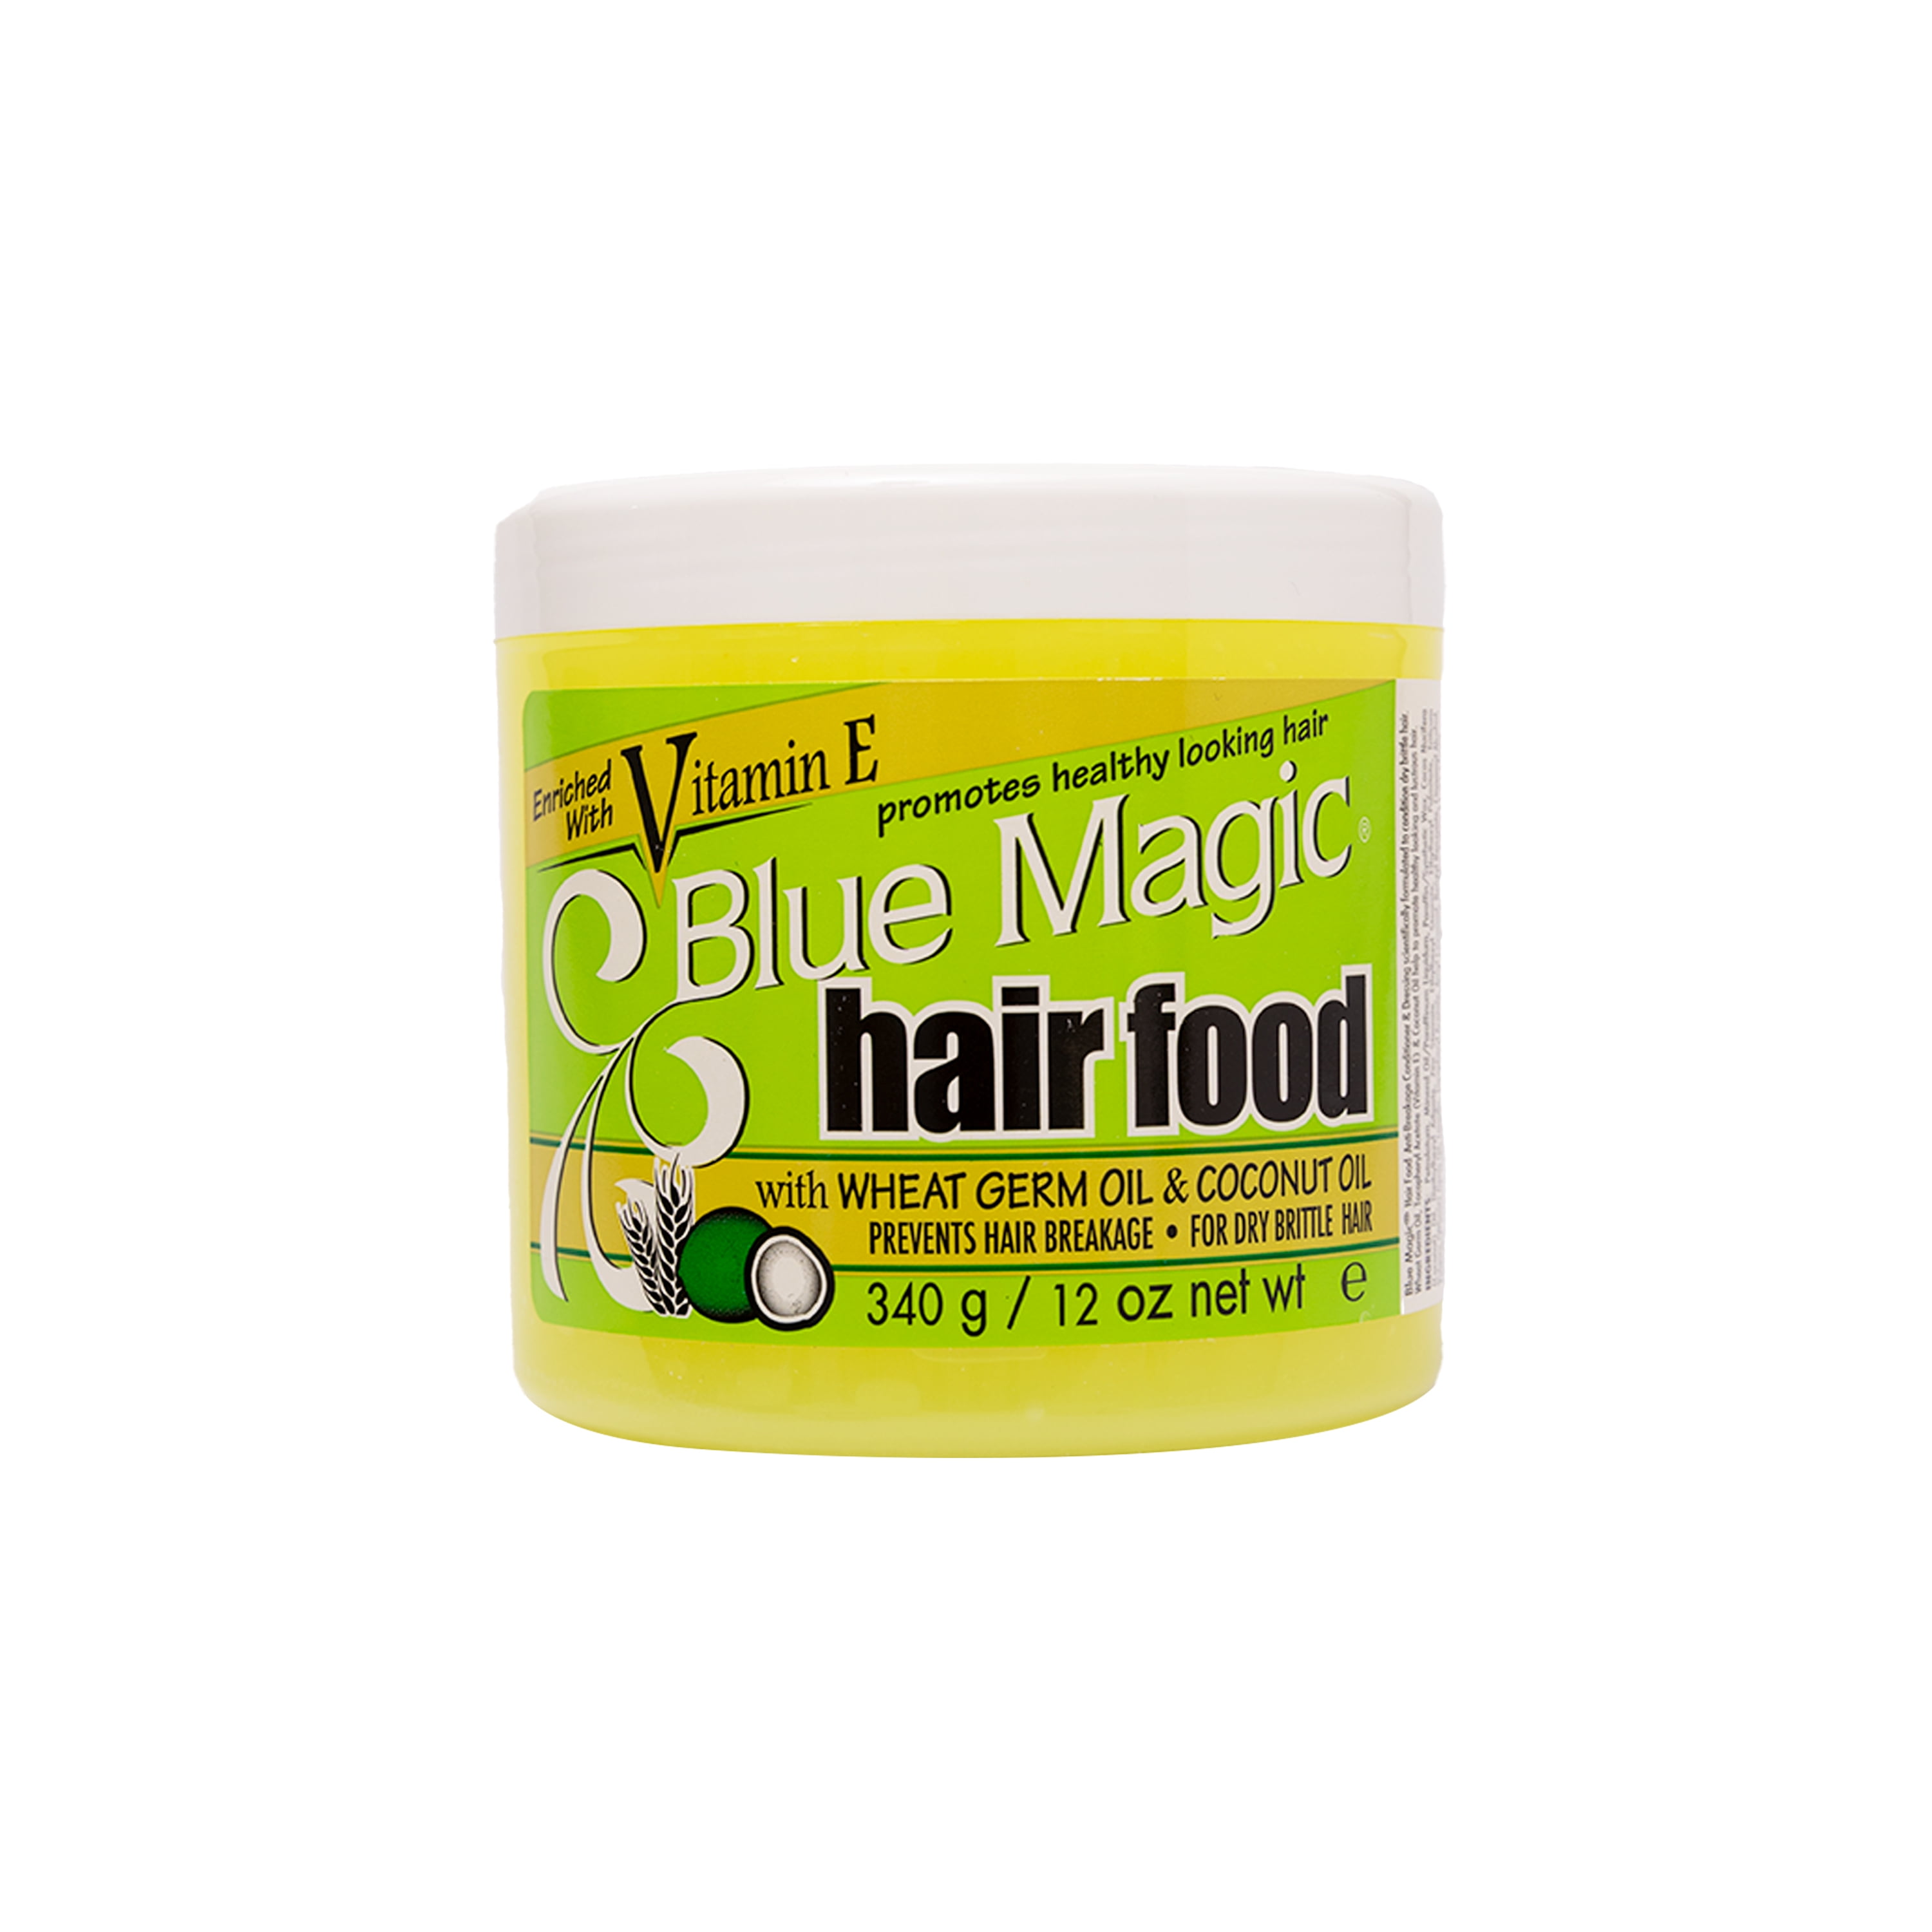 Blue Magic Hair Food with Wheat Germ Oil & Coconut Oil, 12 oz 